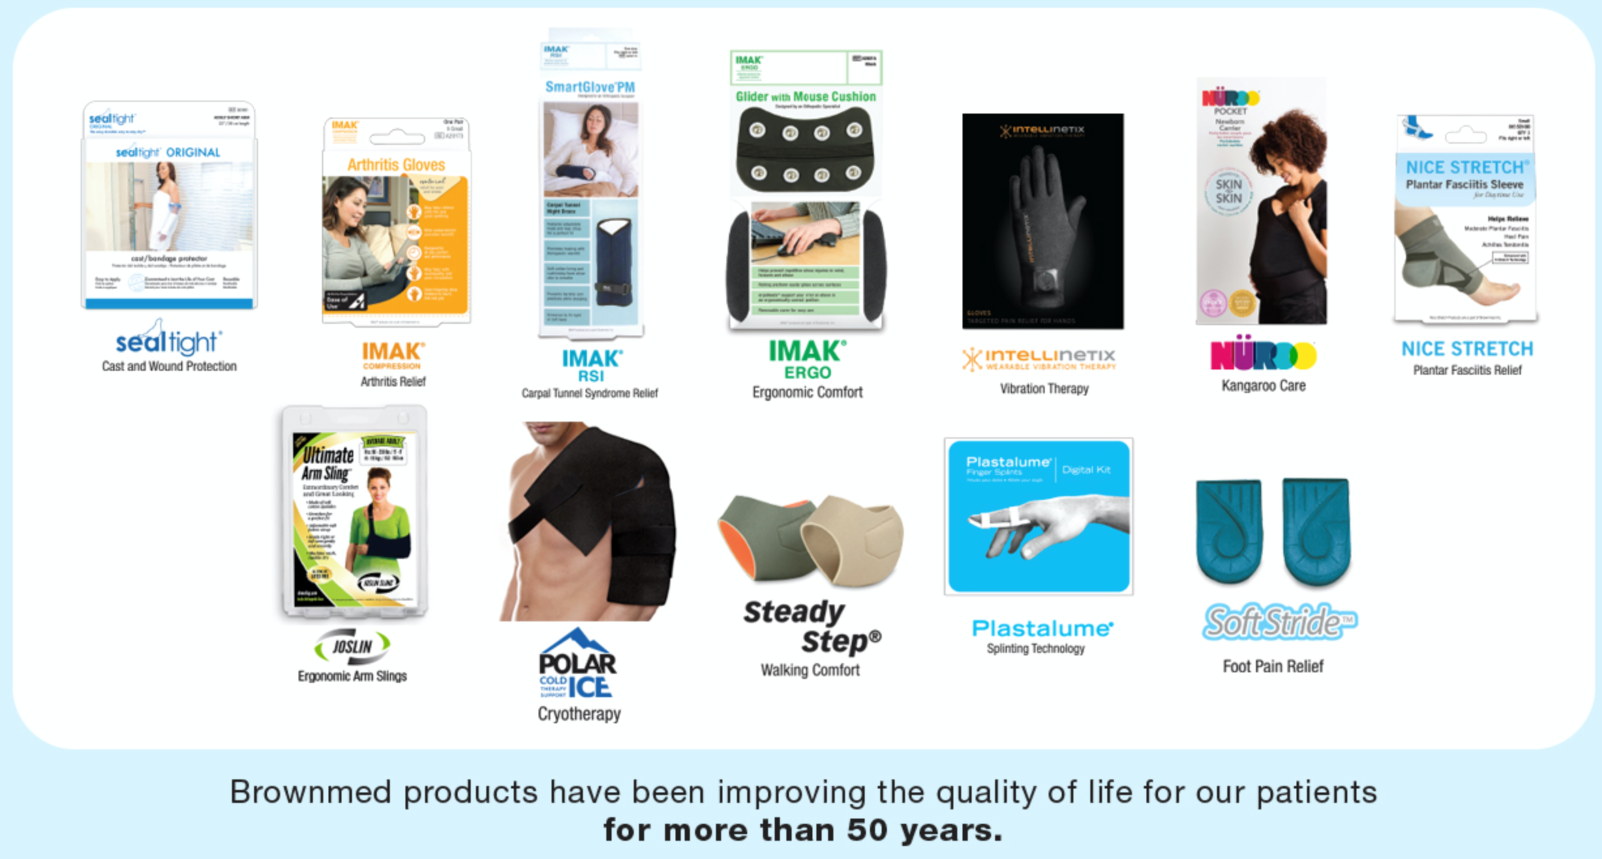 骨科产品 - 足底筋膜炎产品 - 石膏夹板保湿产品 - 下肢夹板